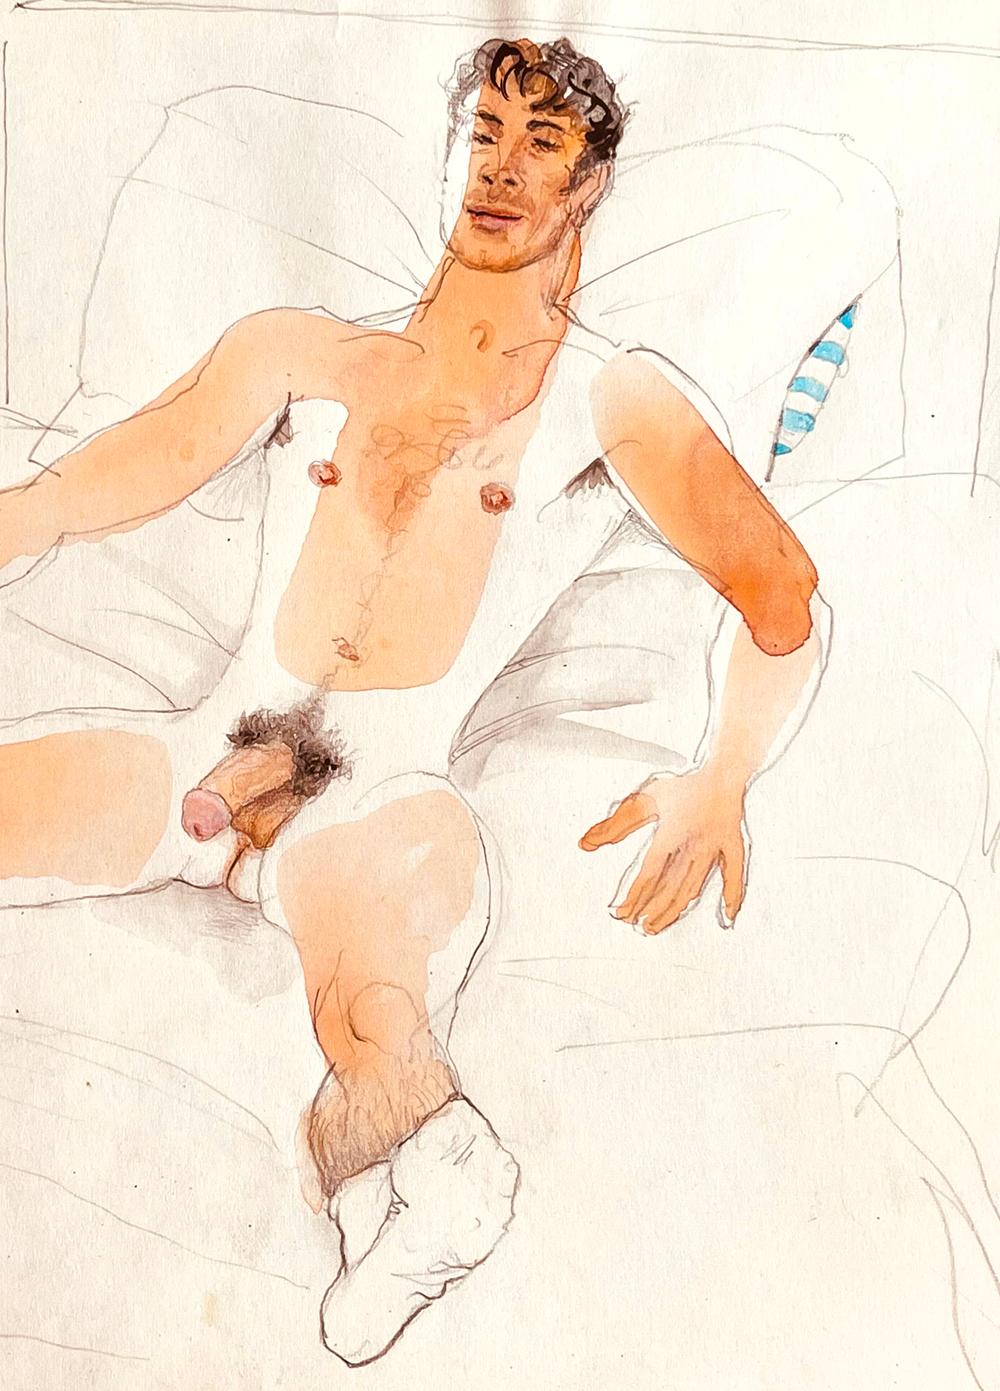 Provocante et sans complaisance, cette aquarelle représentant un marin entièrement nu, étendu sur son lit, son uniforme et sa casquette soigneusement posés sur une chaise à côté, a été peinte par Emlen Etting, un peintre de Philadelphie qui